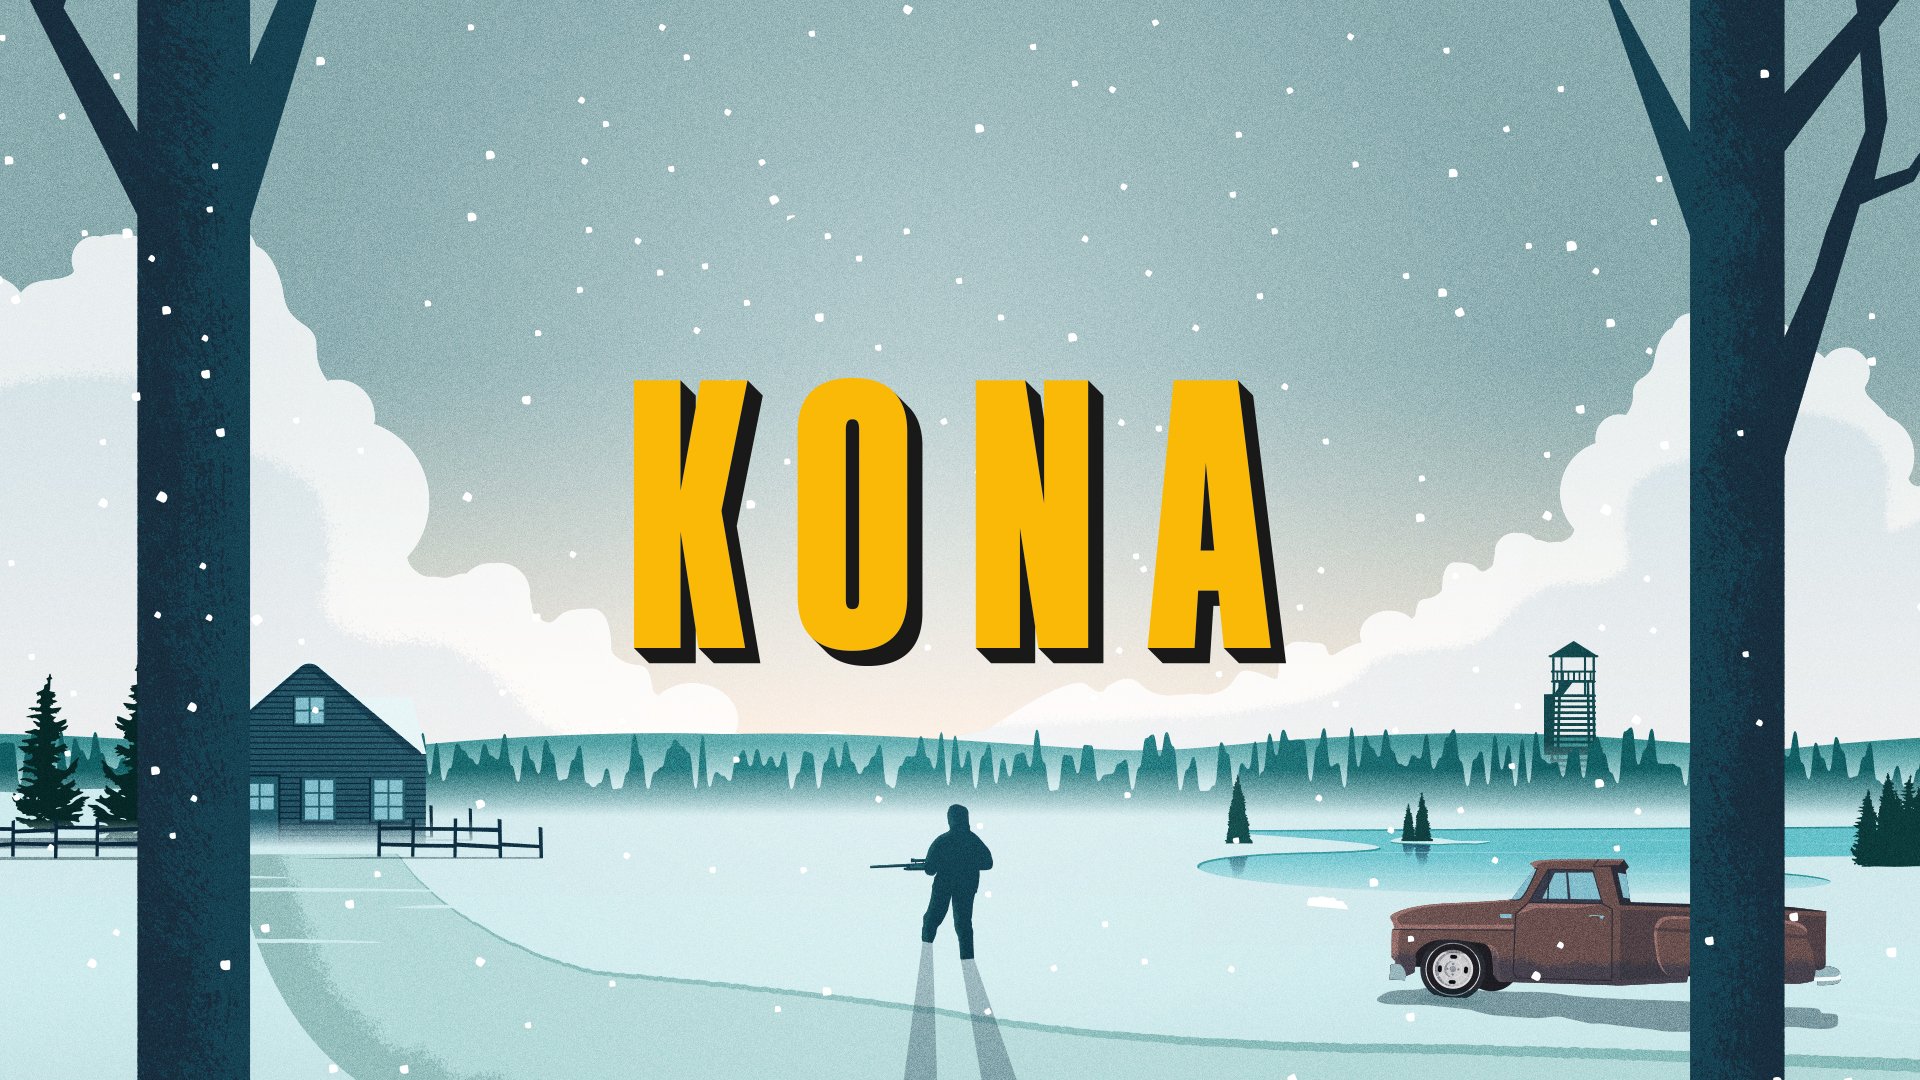 Die Fortsetzung von Kona, einer Detektivgeschichte über einen mysteriösen Nebel, ist angekündigt